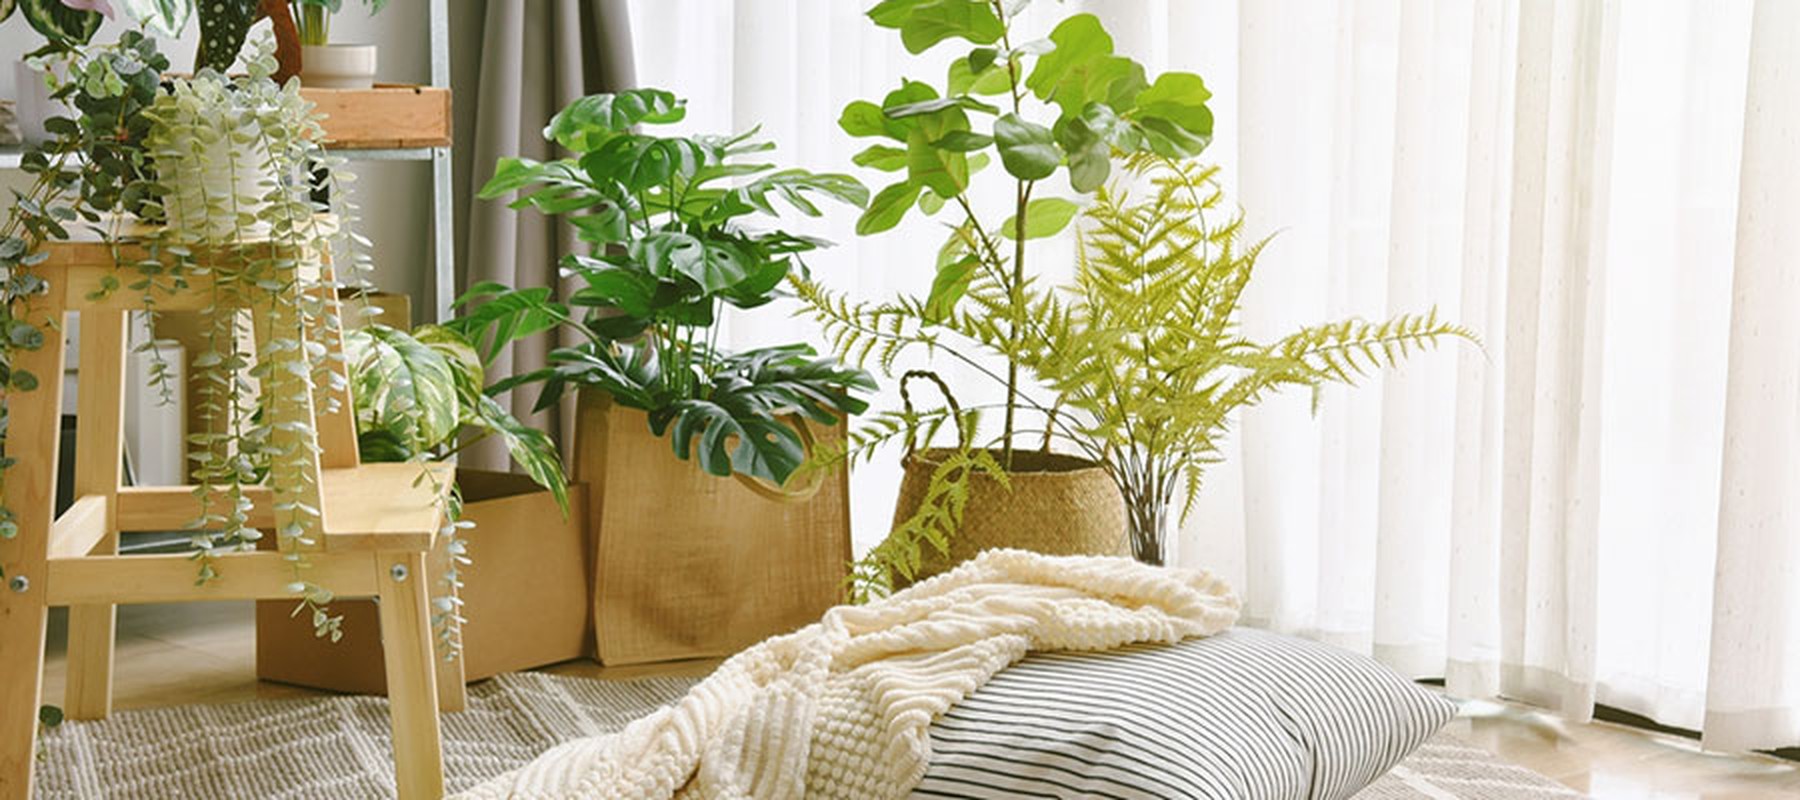 Cojines y mantas junto a varias macetas con plantas en el interior de un salón